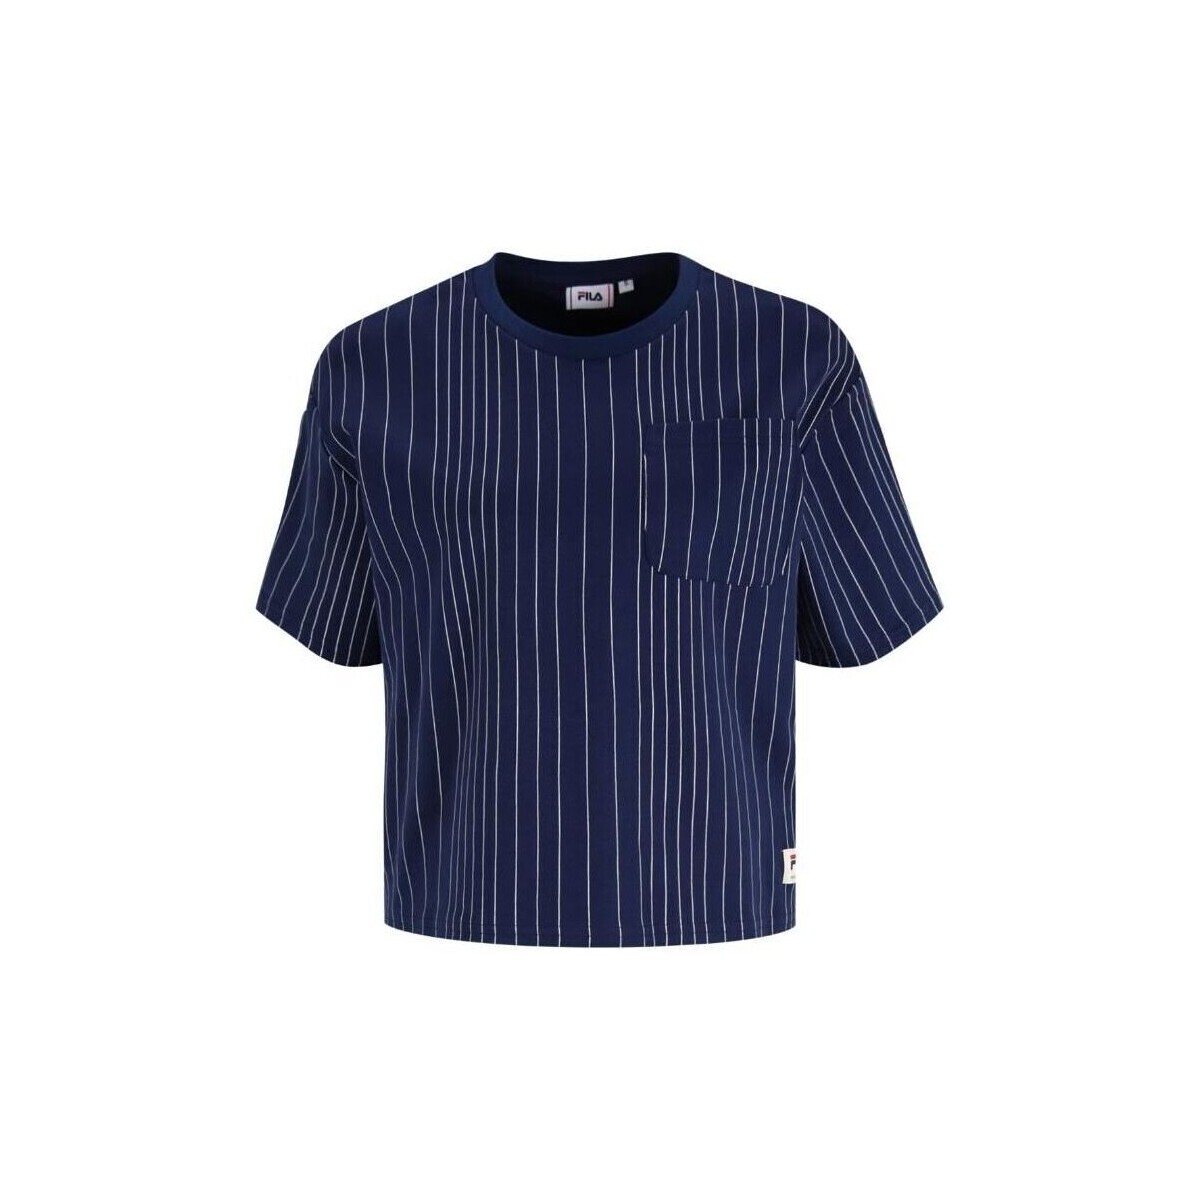 textil Mujer Tops y Camisetas Fila - faw0420 Azul